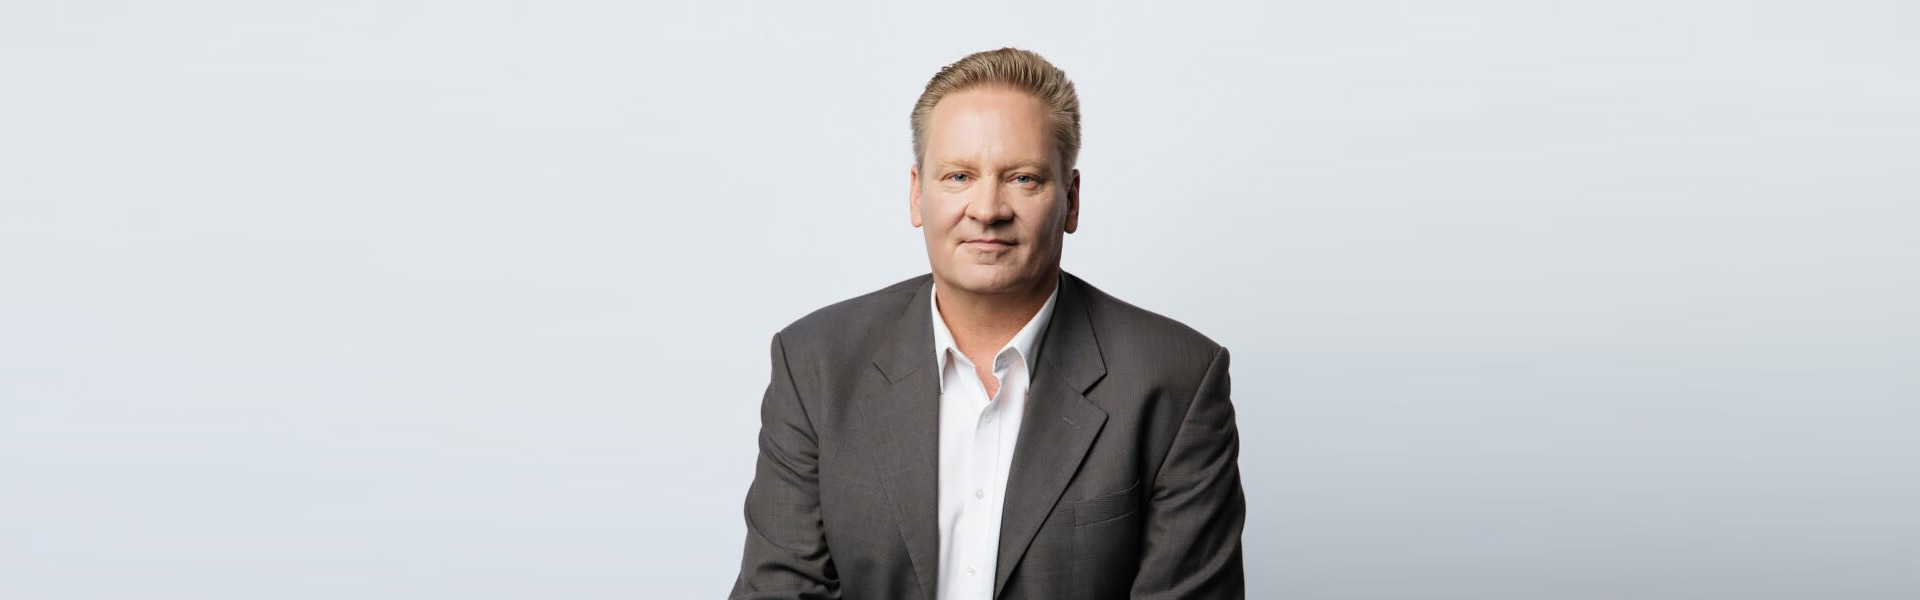 Michael Joos – CEO